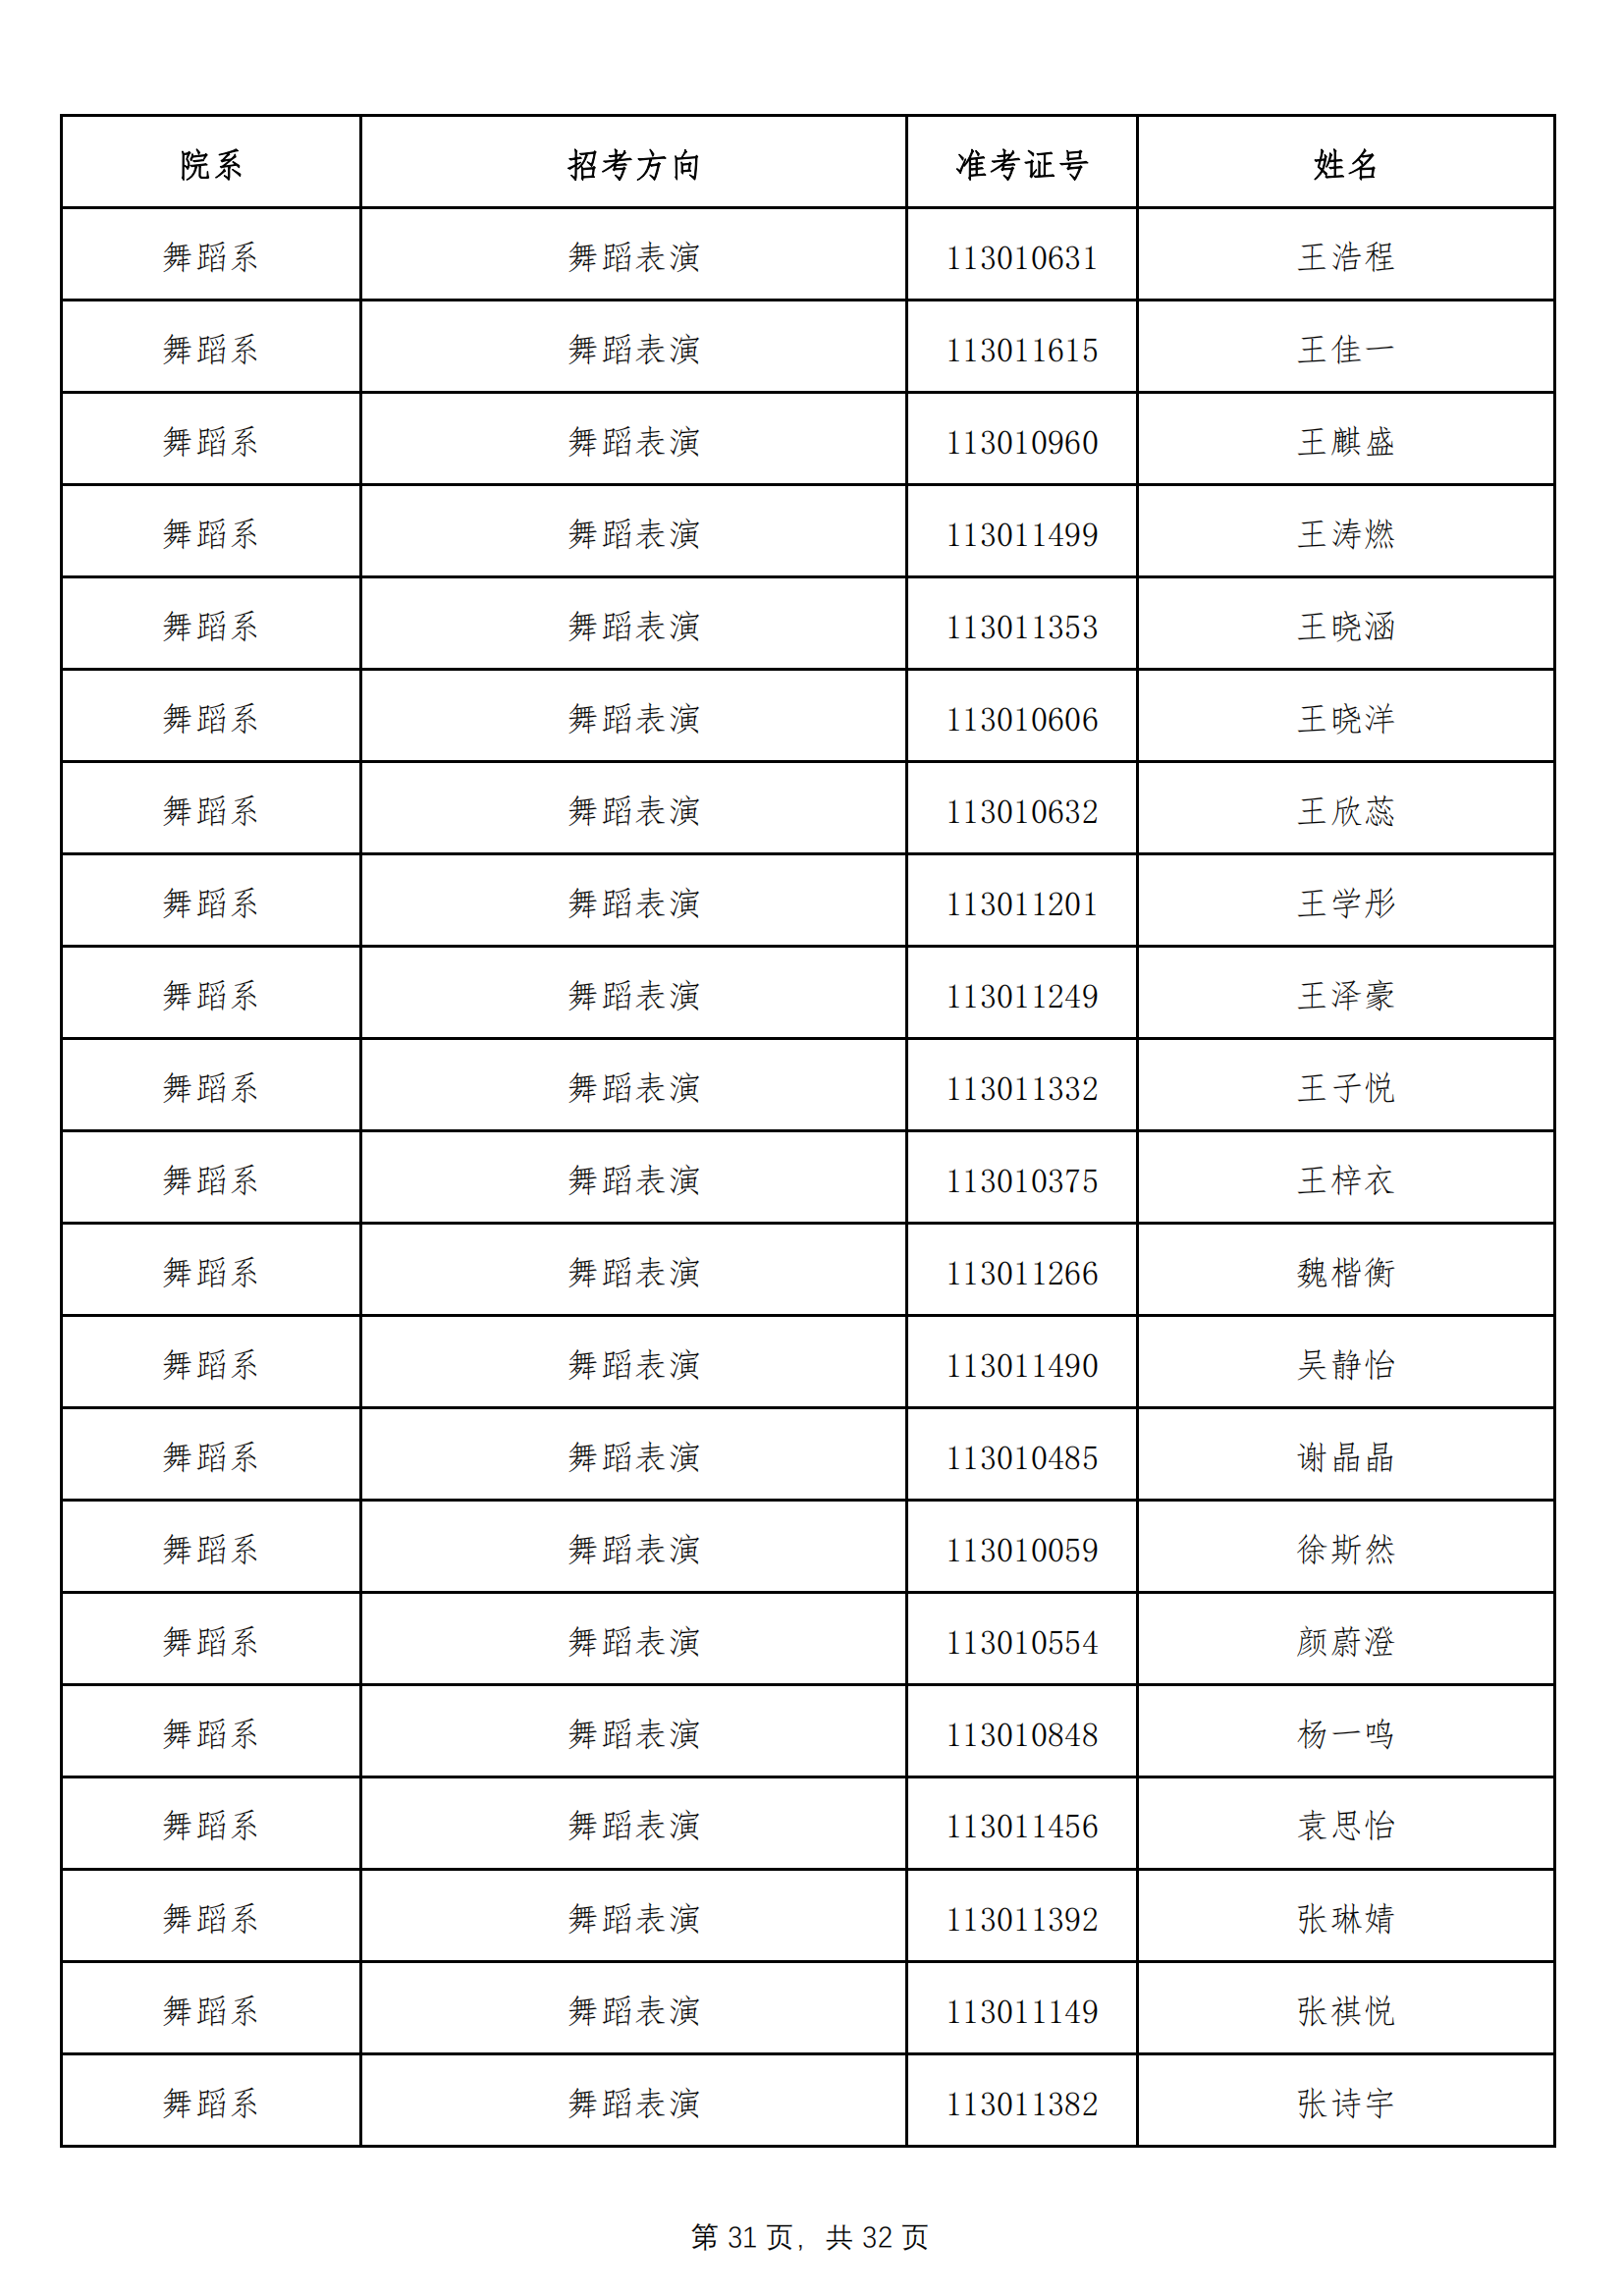 天津音乐学院2022年本科招生拟录取名单 （除上海考生外）_30.png